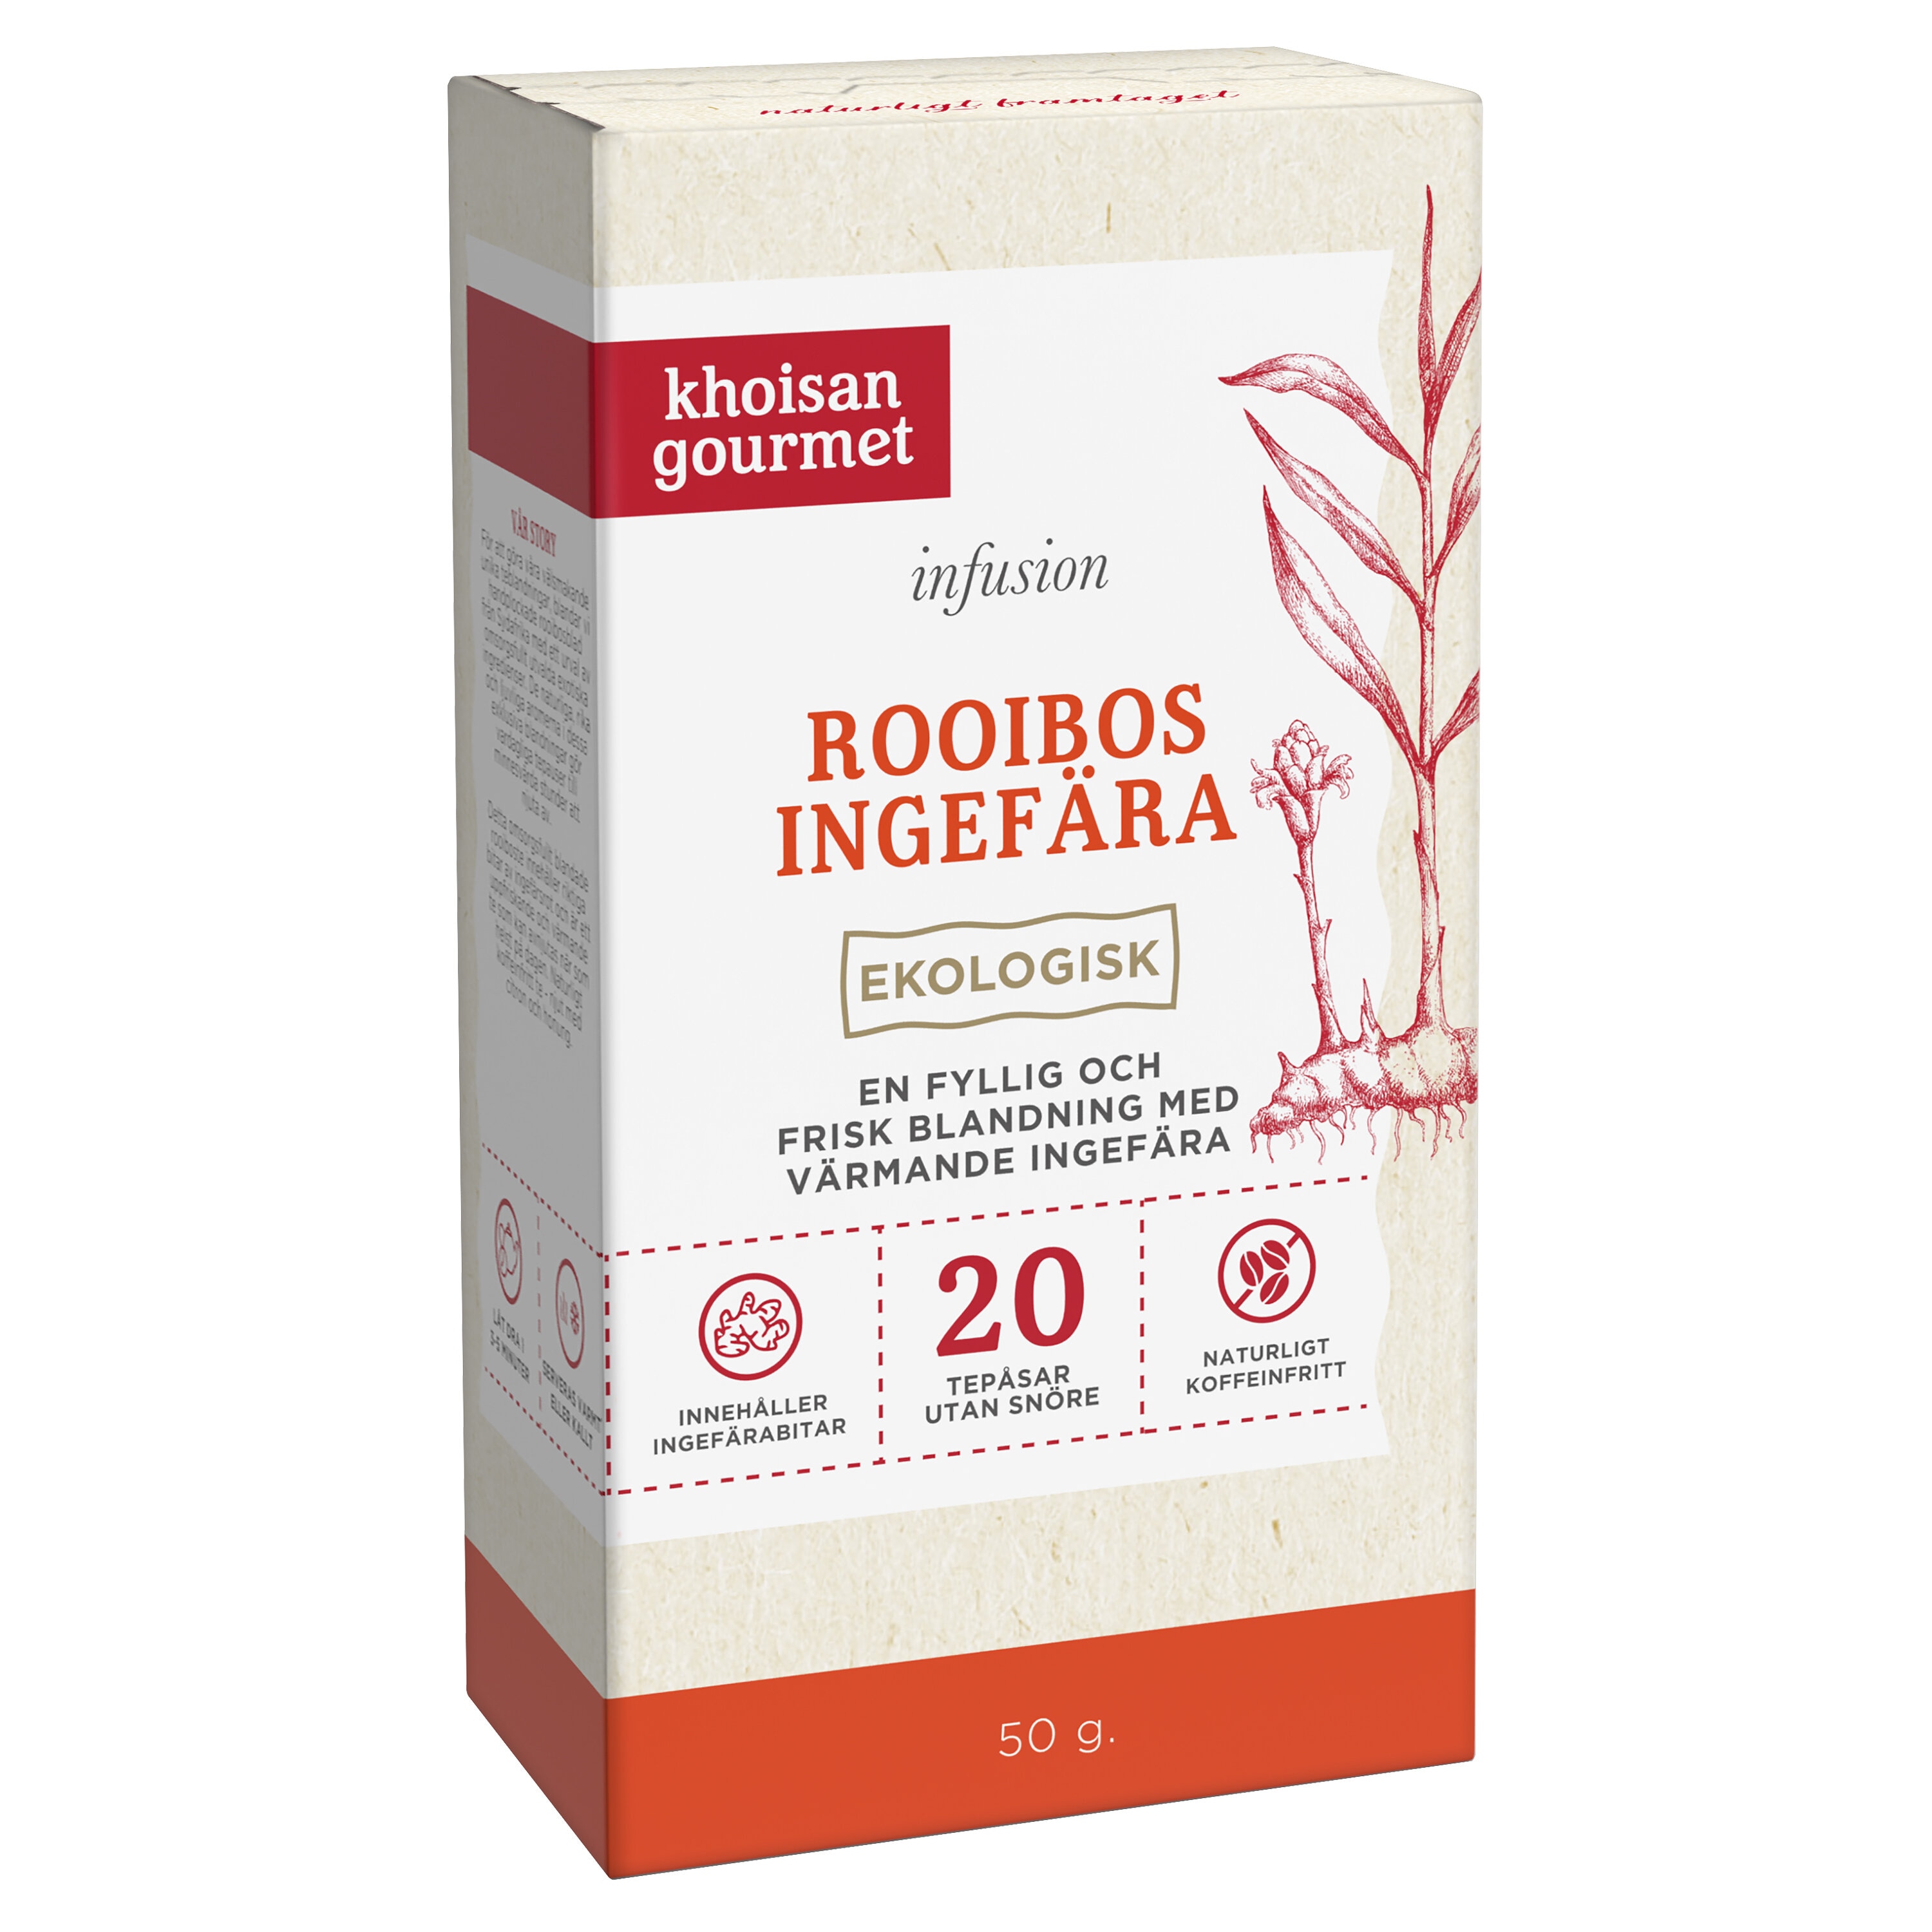 Khoisan Gourmet Rooibos IngefÃ¤ra 50g